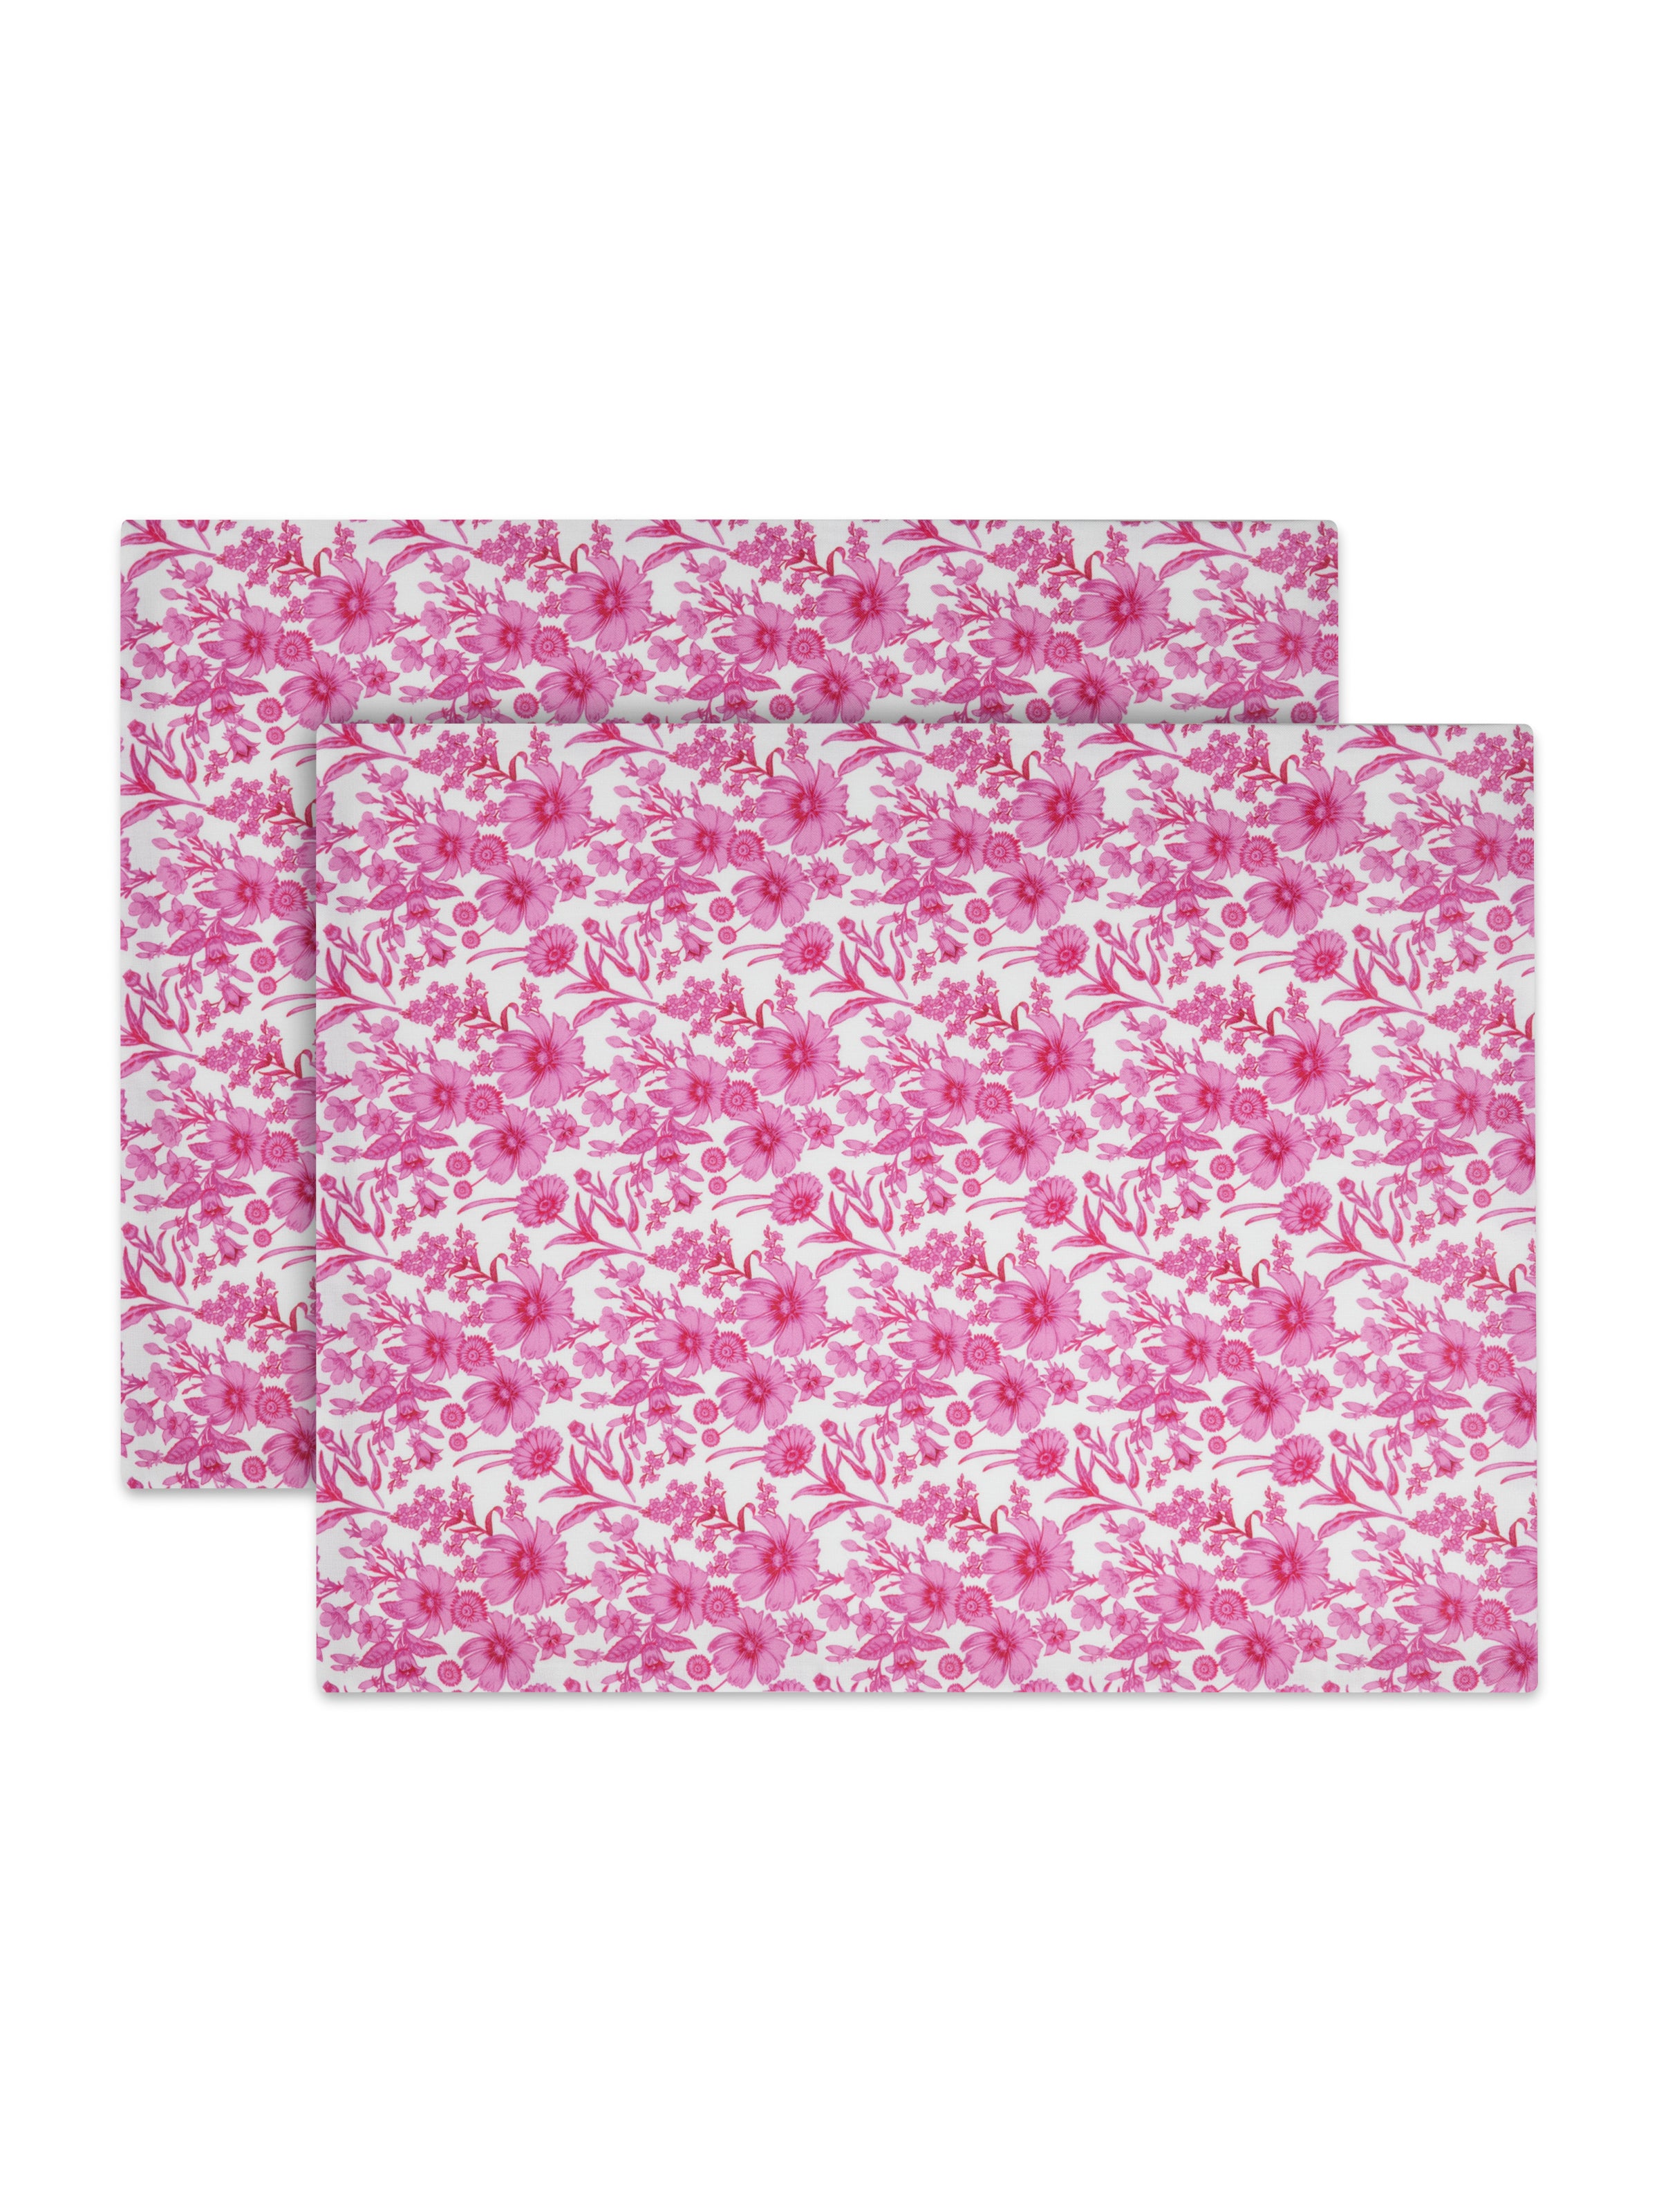 HOMM DAYS X MERGİM Pink Blooms in Linen